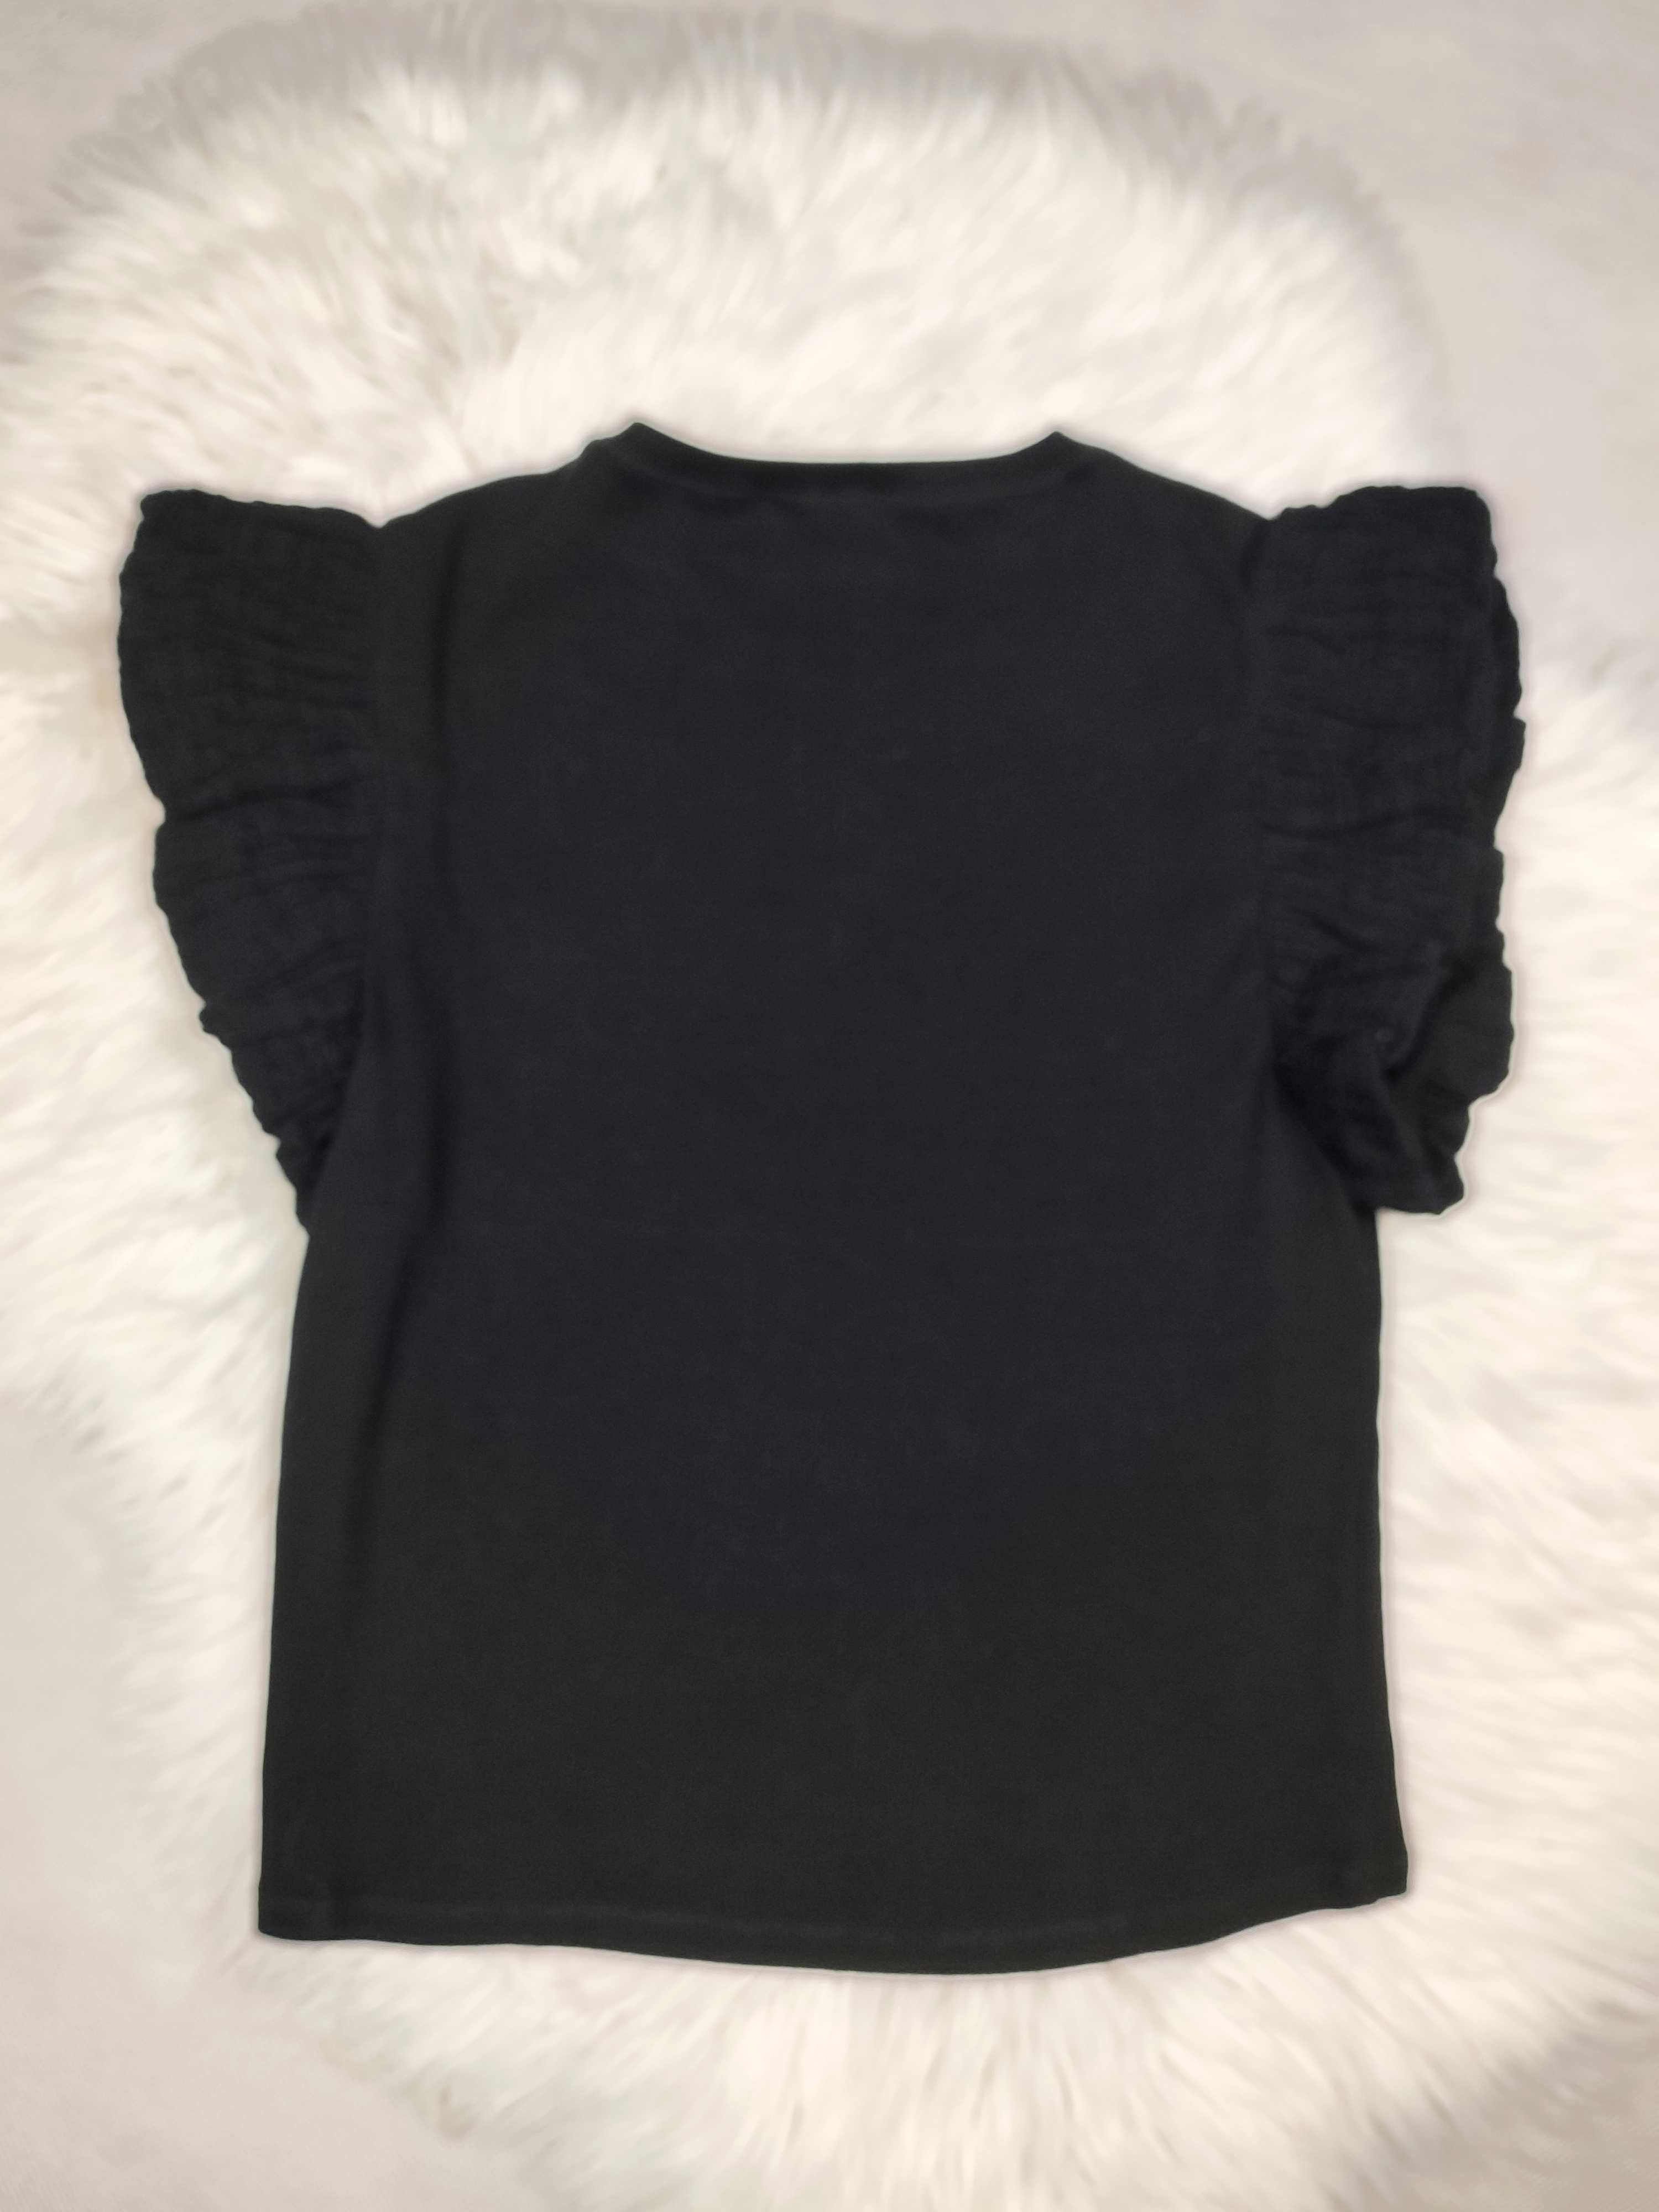 Czarna damska bluzka bawełniana t-shirt Zara r. S